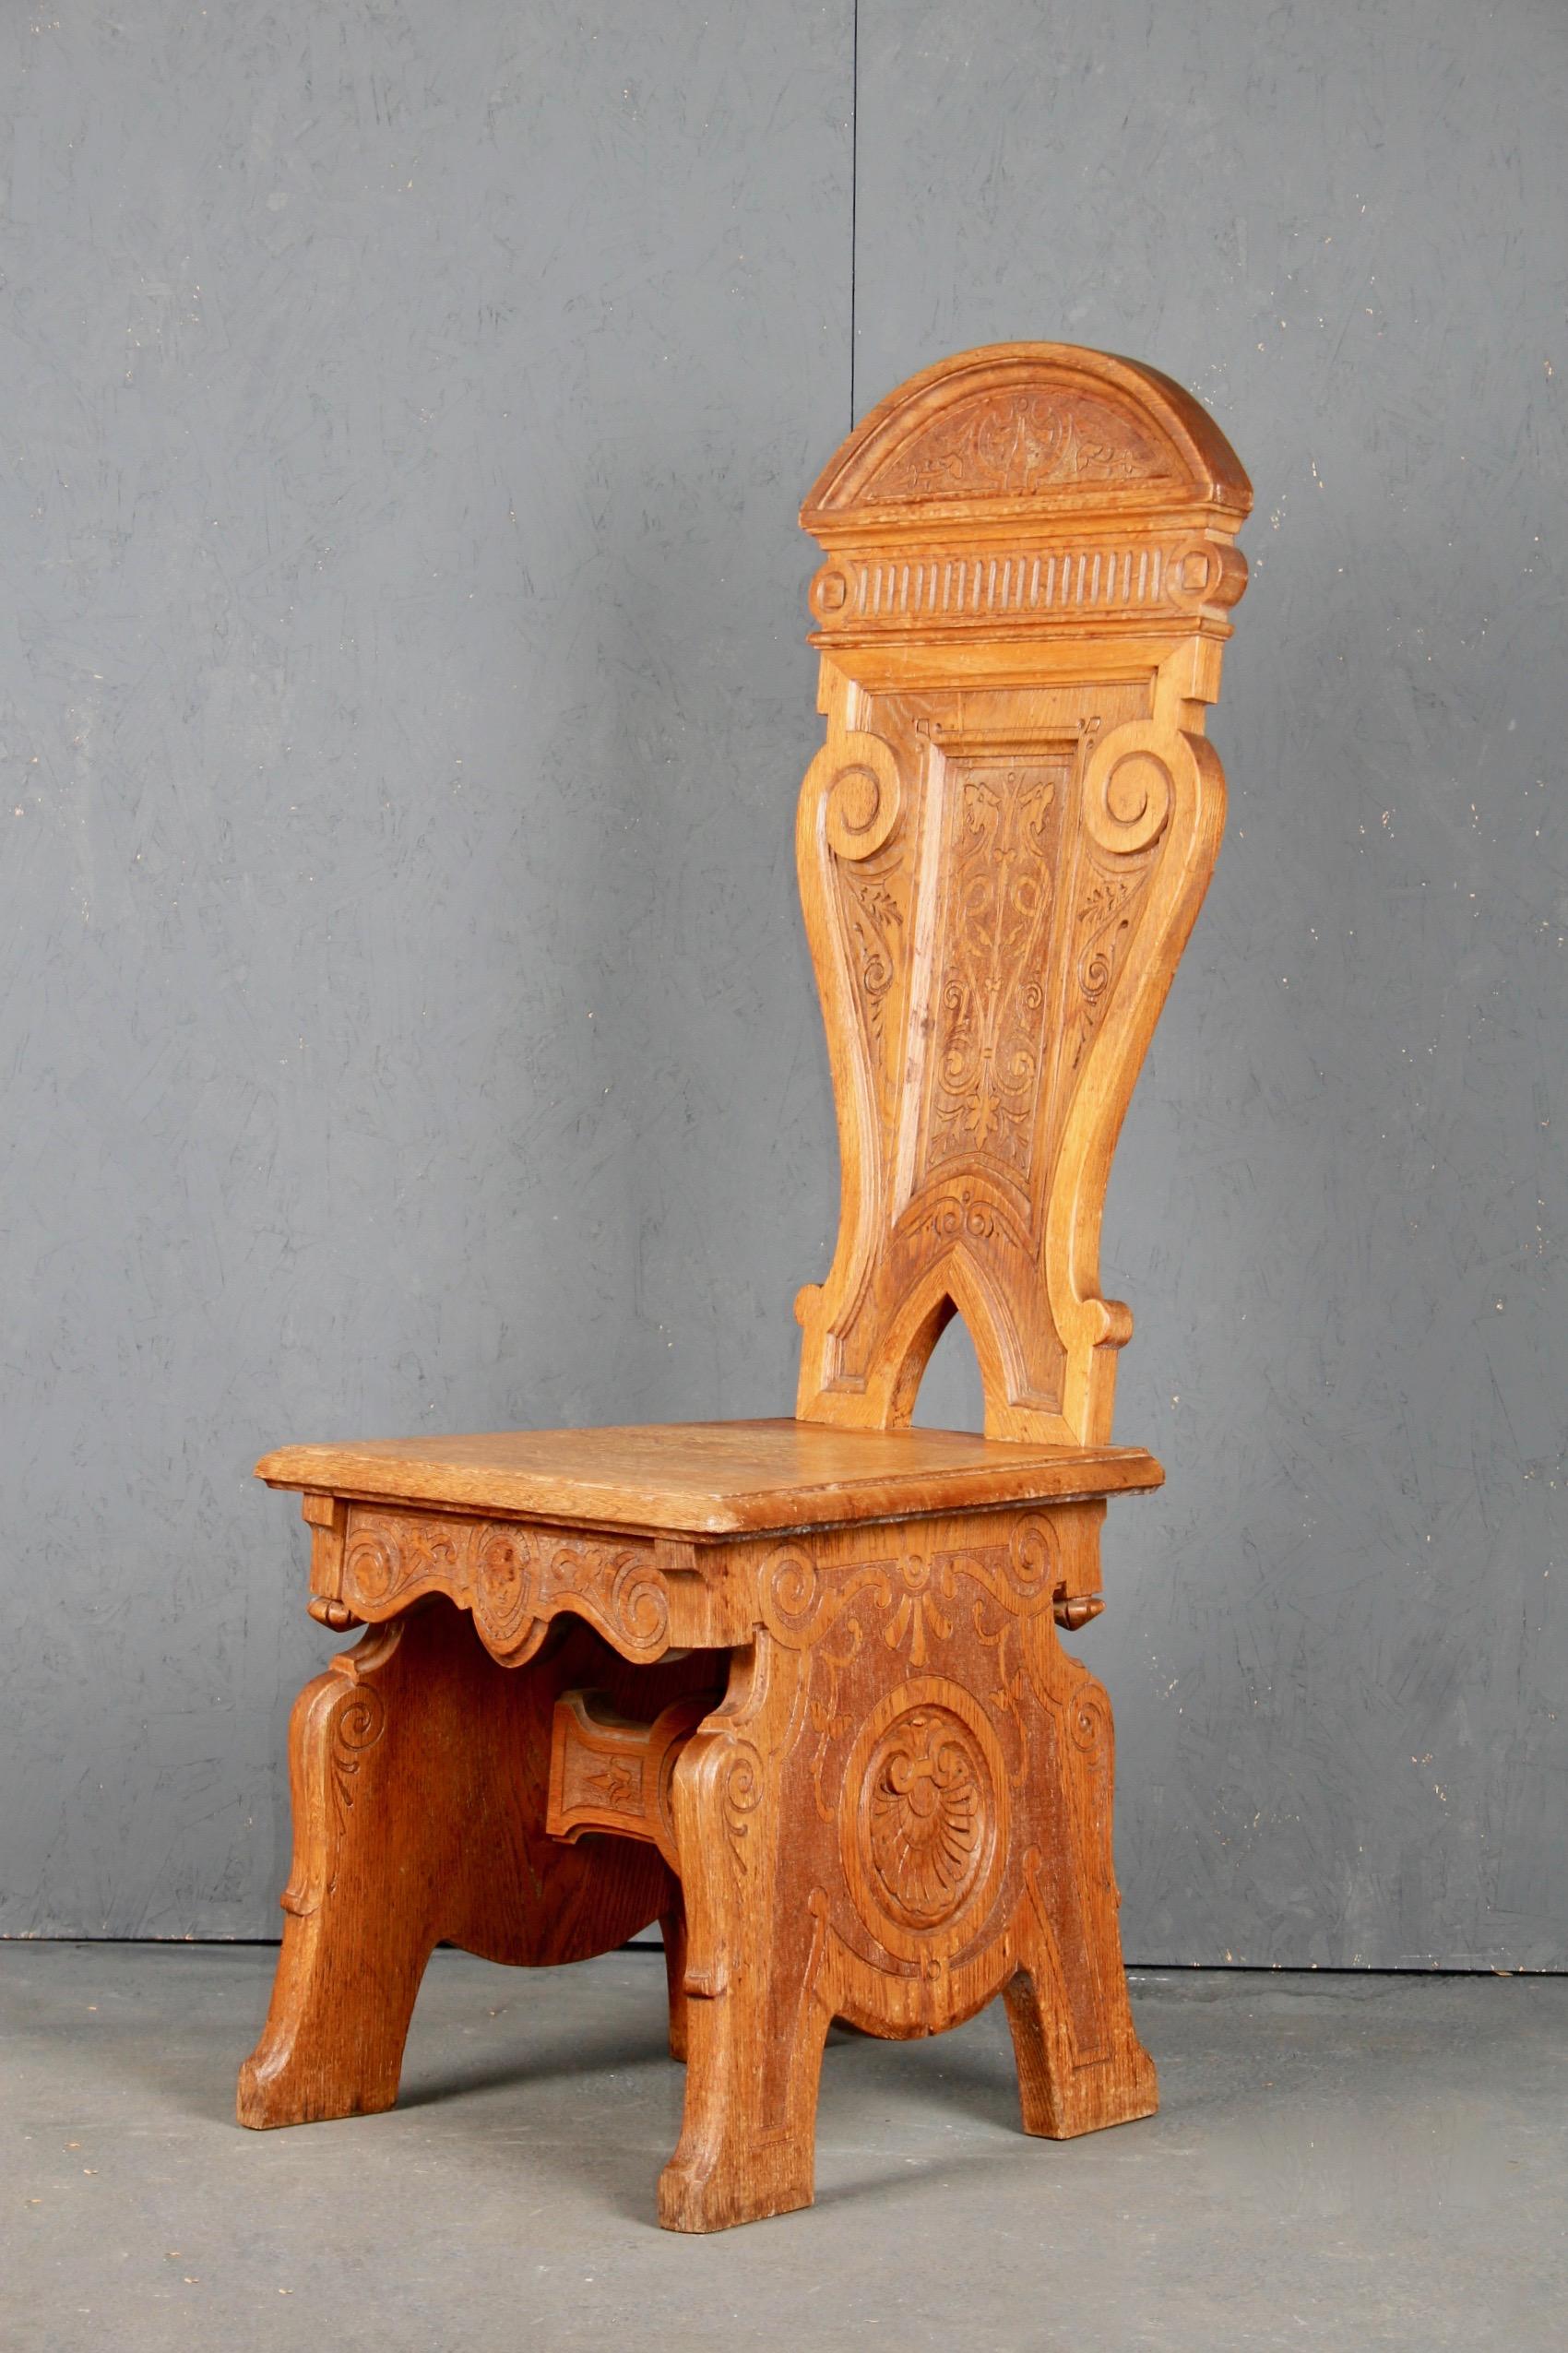 Chaise en bois de style Folk Art suédois.